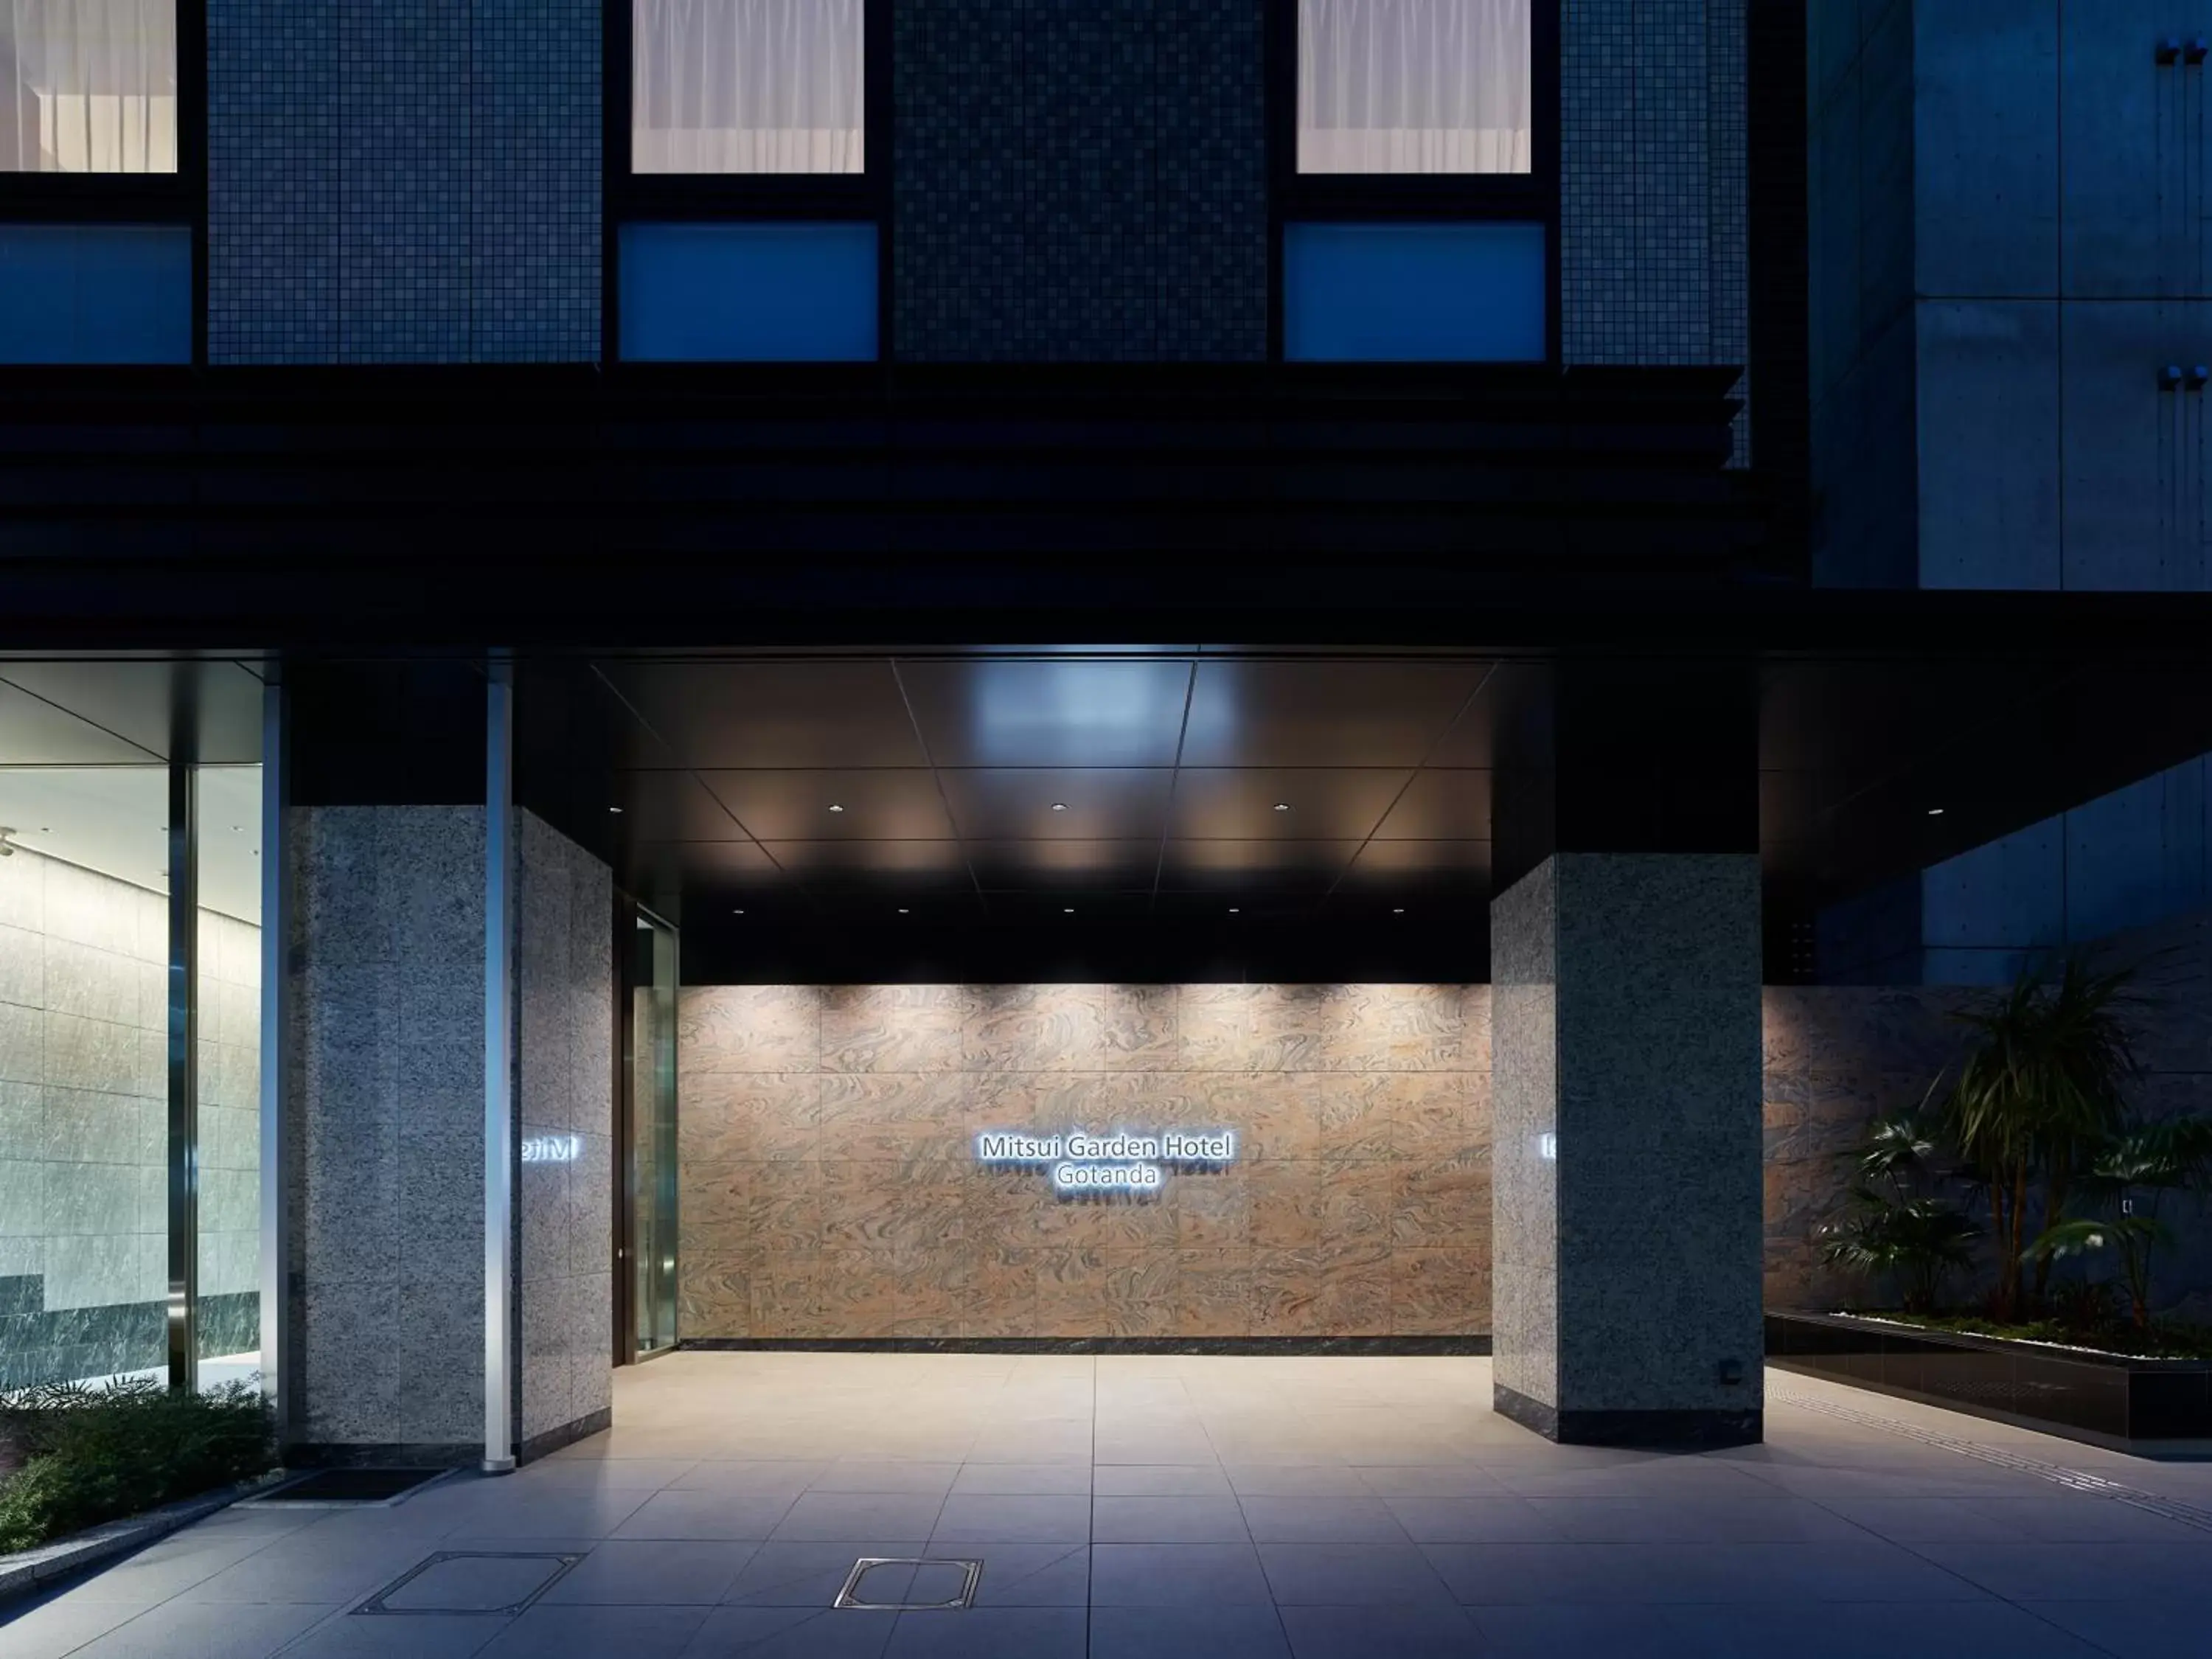 Facade/entrance in Mitsui Garden Hotel Gotanda